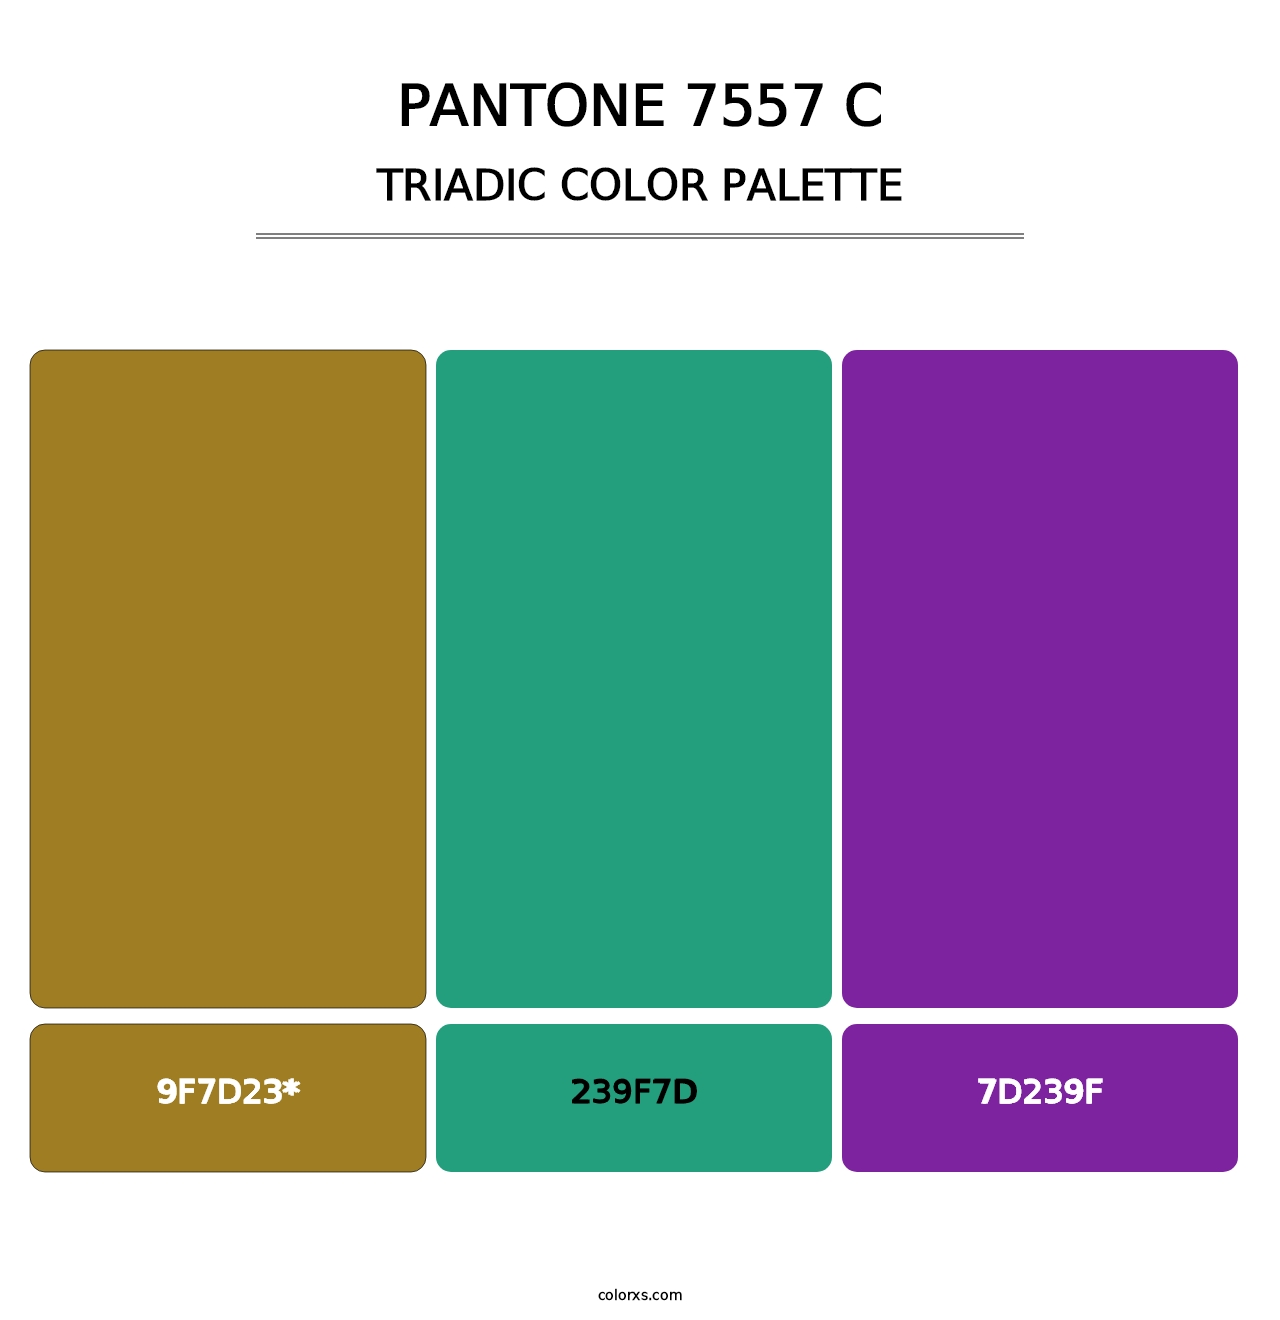 PANTONE 7557 C - Triadic Color Palette